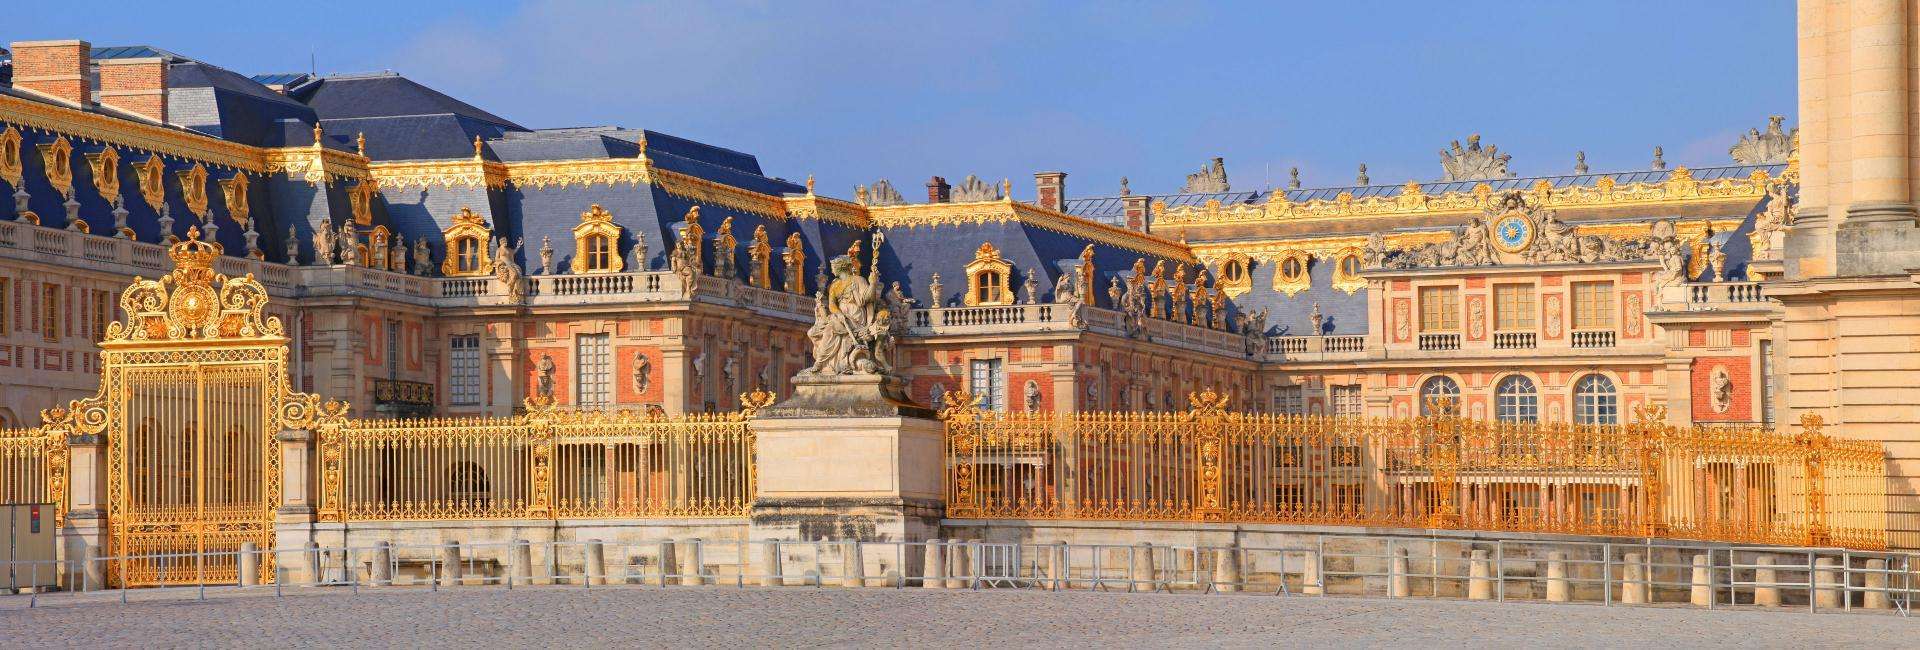 Château de Versailles - Domaine national de Versailles